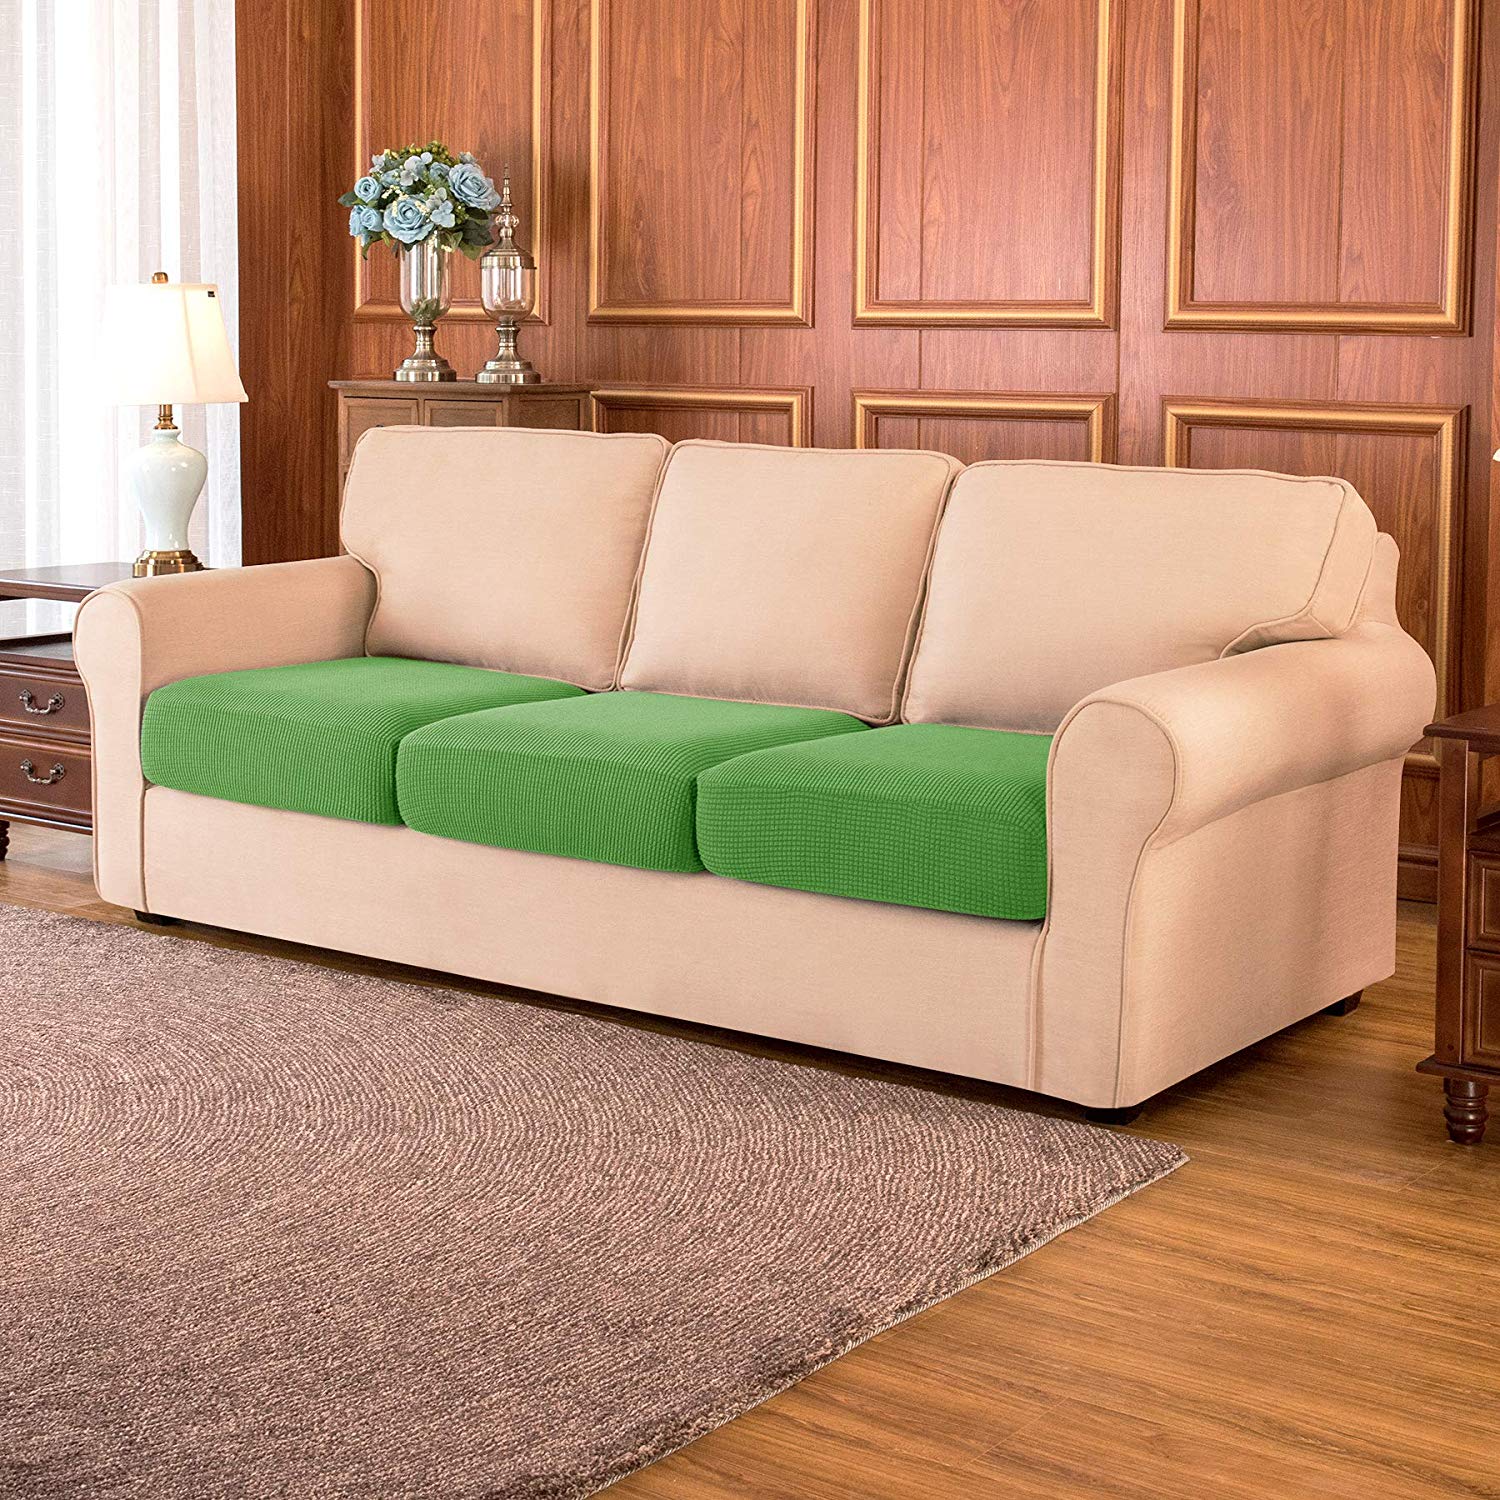 Sofa Cushion / Grass Green Plaid